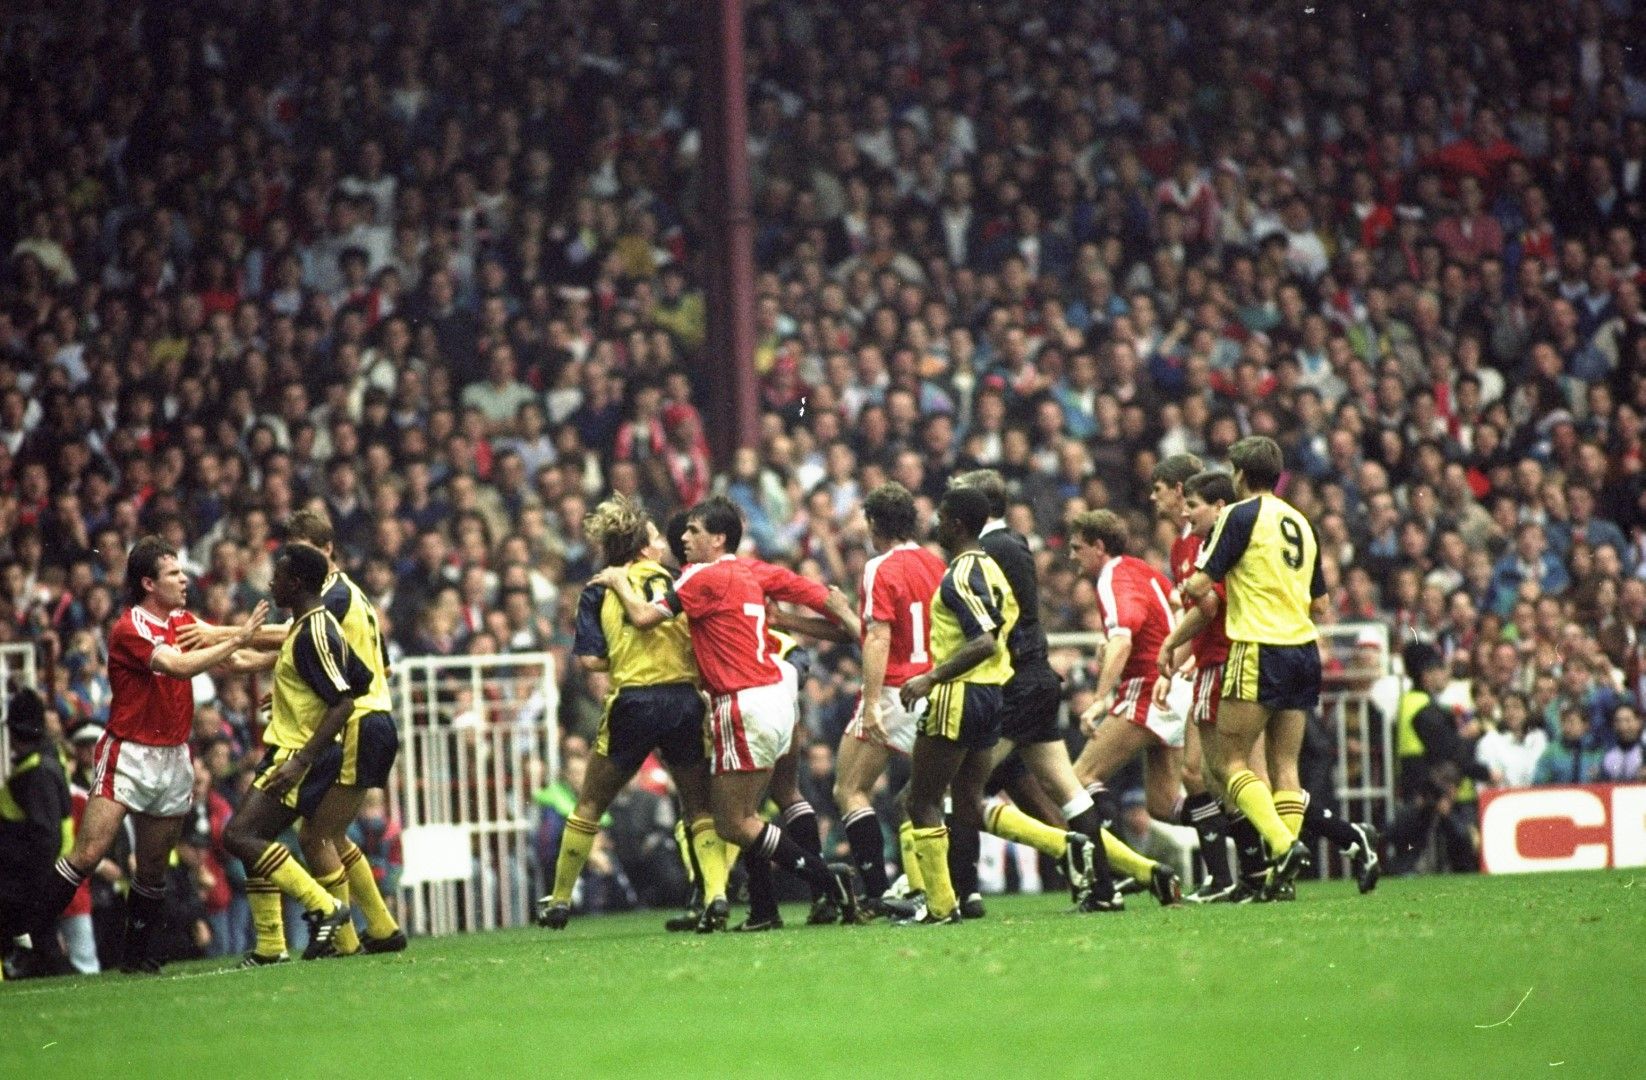 1990 г. - Войната за "Олд Трафорд", както го кръщават медиите. Юнайтед и Арсенал се сбиват на терена, а наказанията не са само за играчите. Двата клуба губят точки в класирането заради позорните сцени